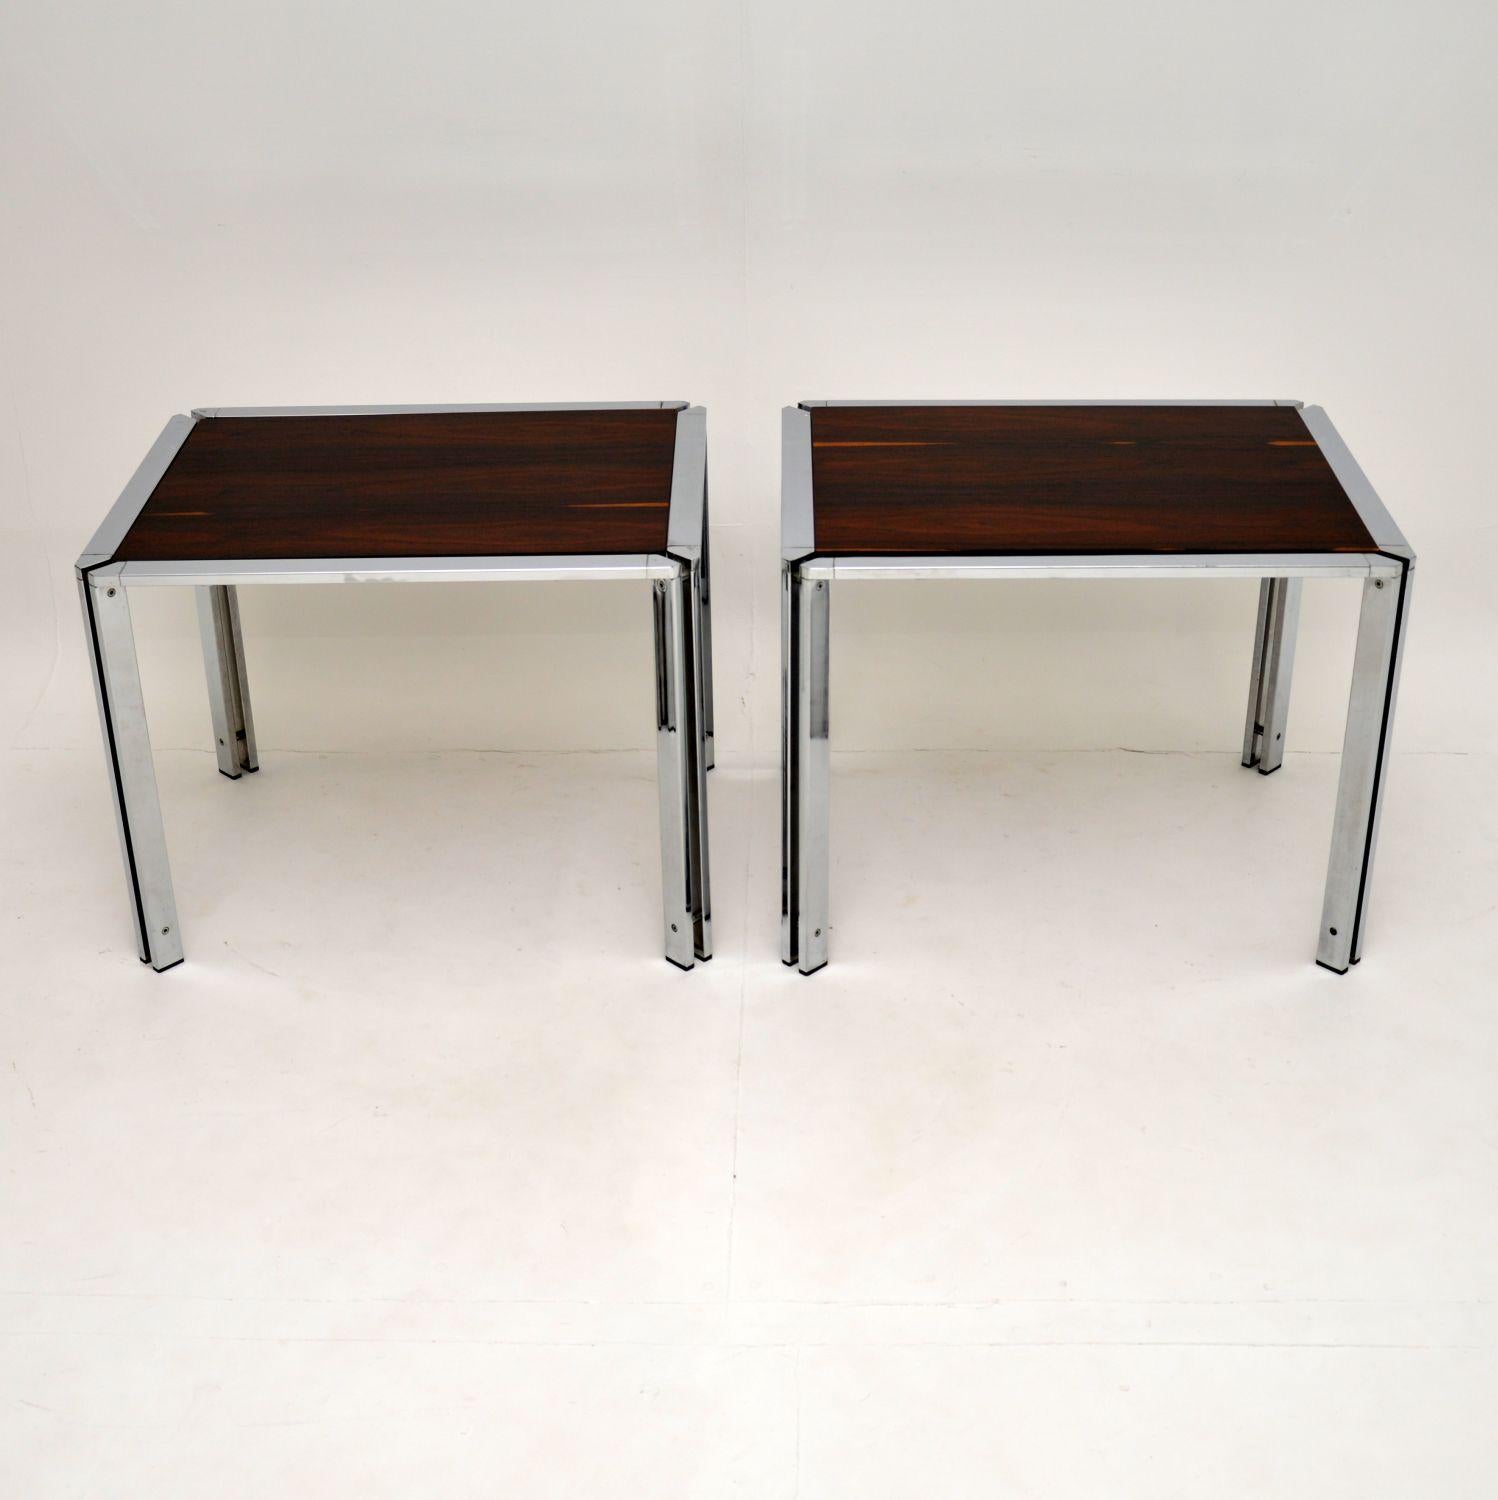 Superbe paire de tables d'appoint vintage en chrome avec plateaux en bois. Fabriqués en Italie, ils datent des années 1960-1970.

Ils sont magnifiquement fabriqués et ont une taille très utile. Les cadres en chrome poli sont en excellent état et ne